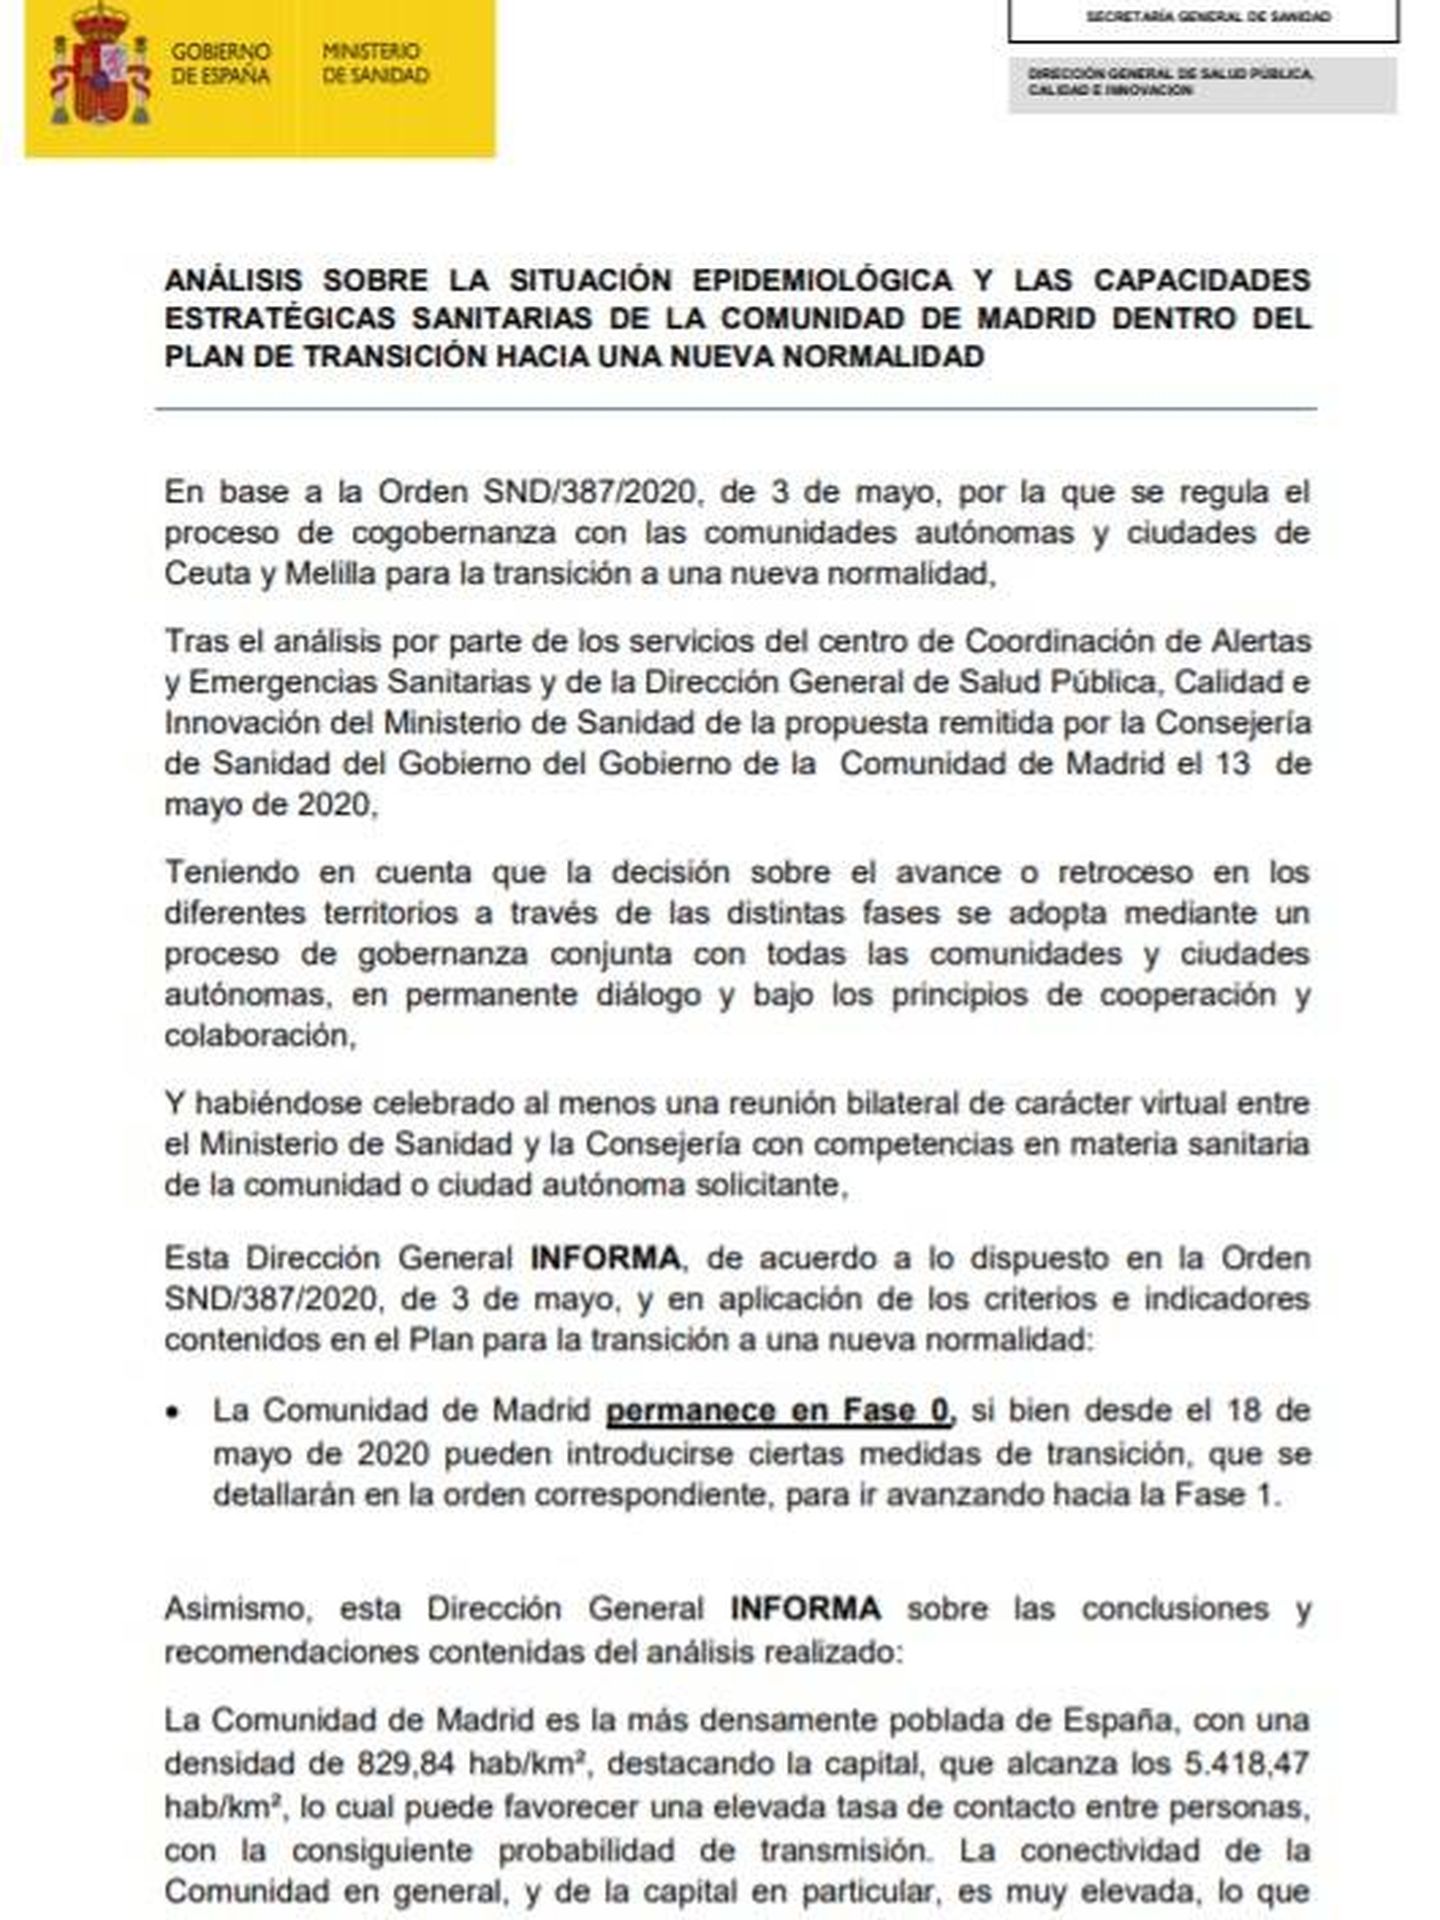 Consulte aquí en PDF el informe del Ministerio de Sanidad sobre la Comunidad de Madrid de 15 de mayo de 2020. 